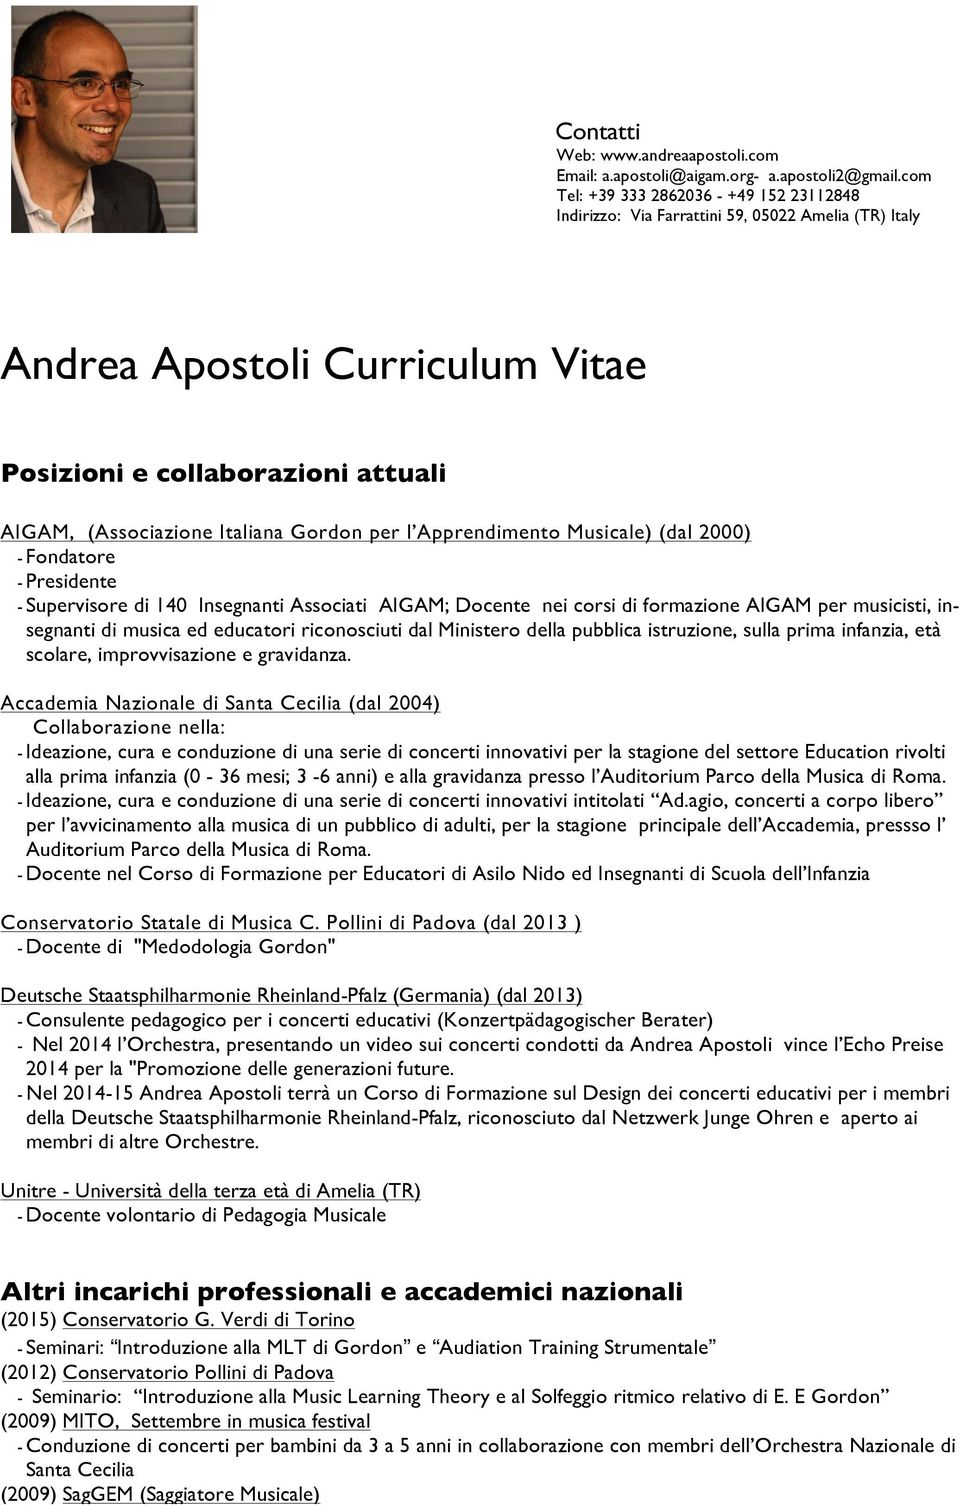 Andrea Apostoli Curriculum Vitae Pdf Free Download